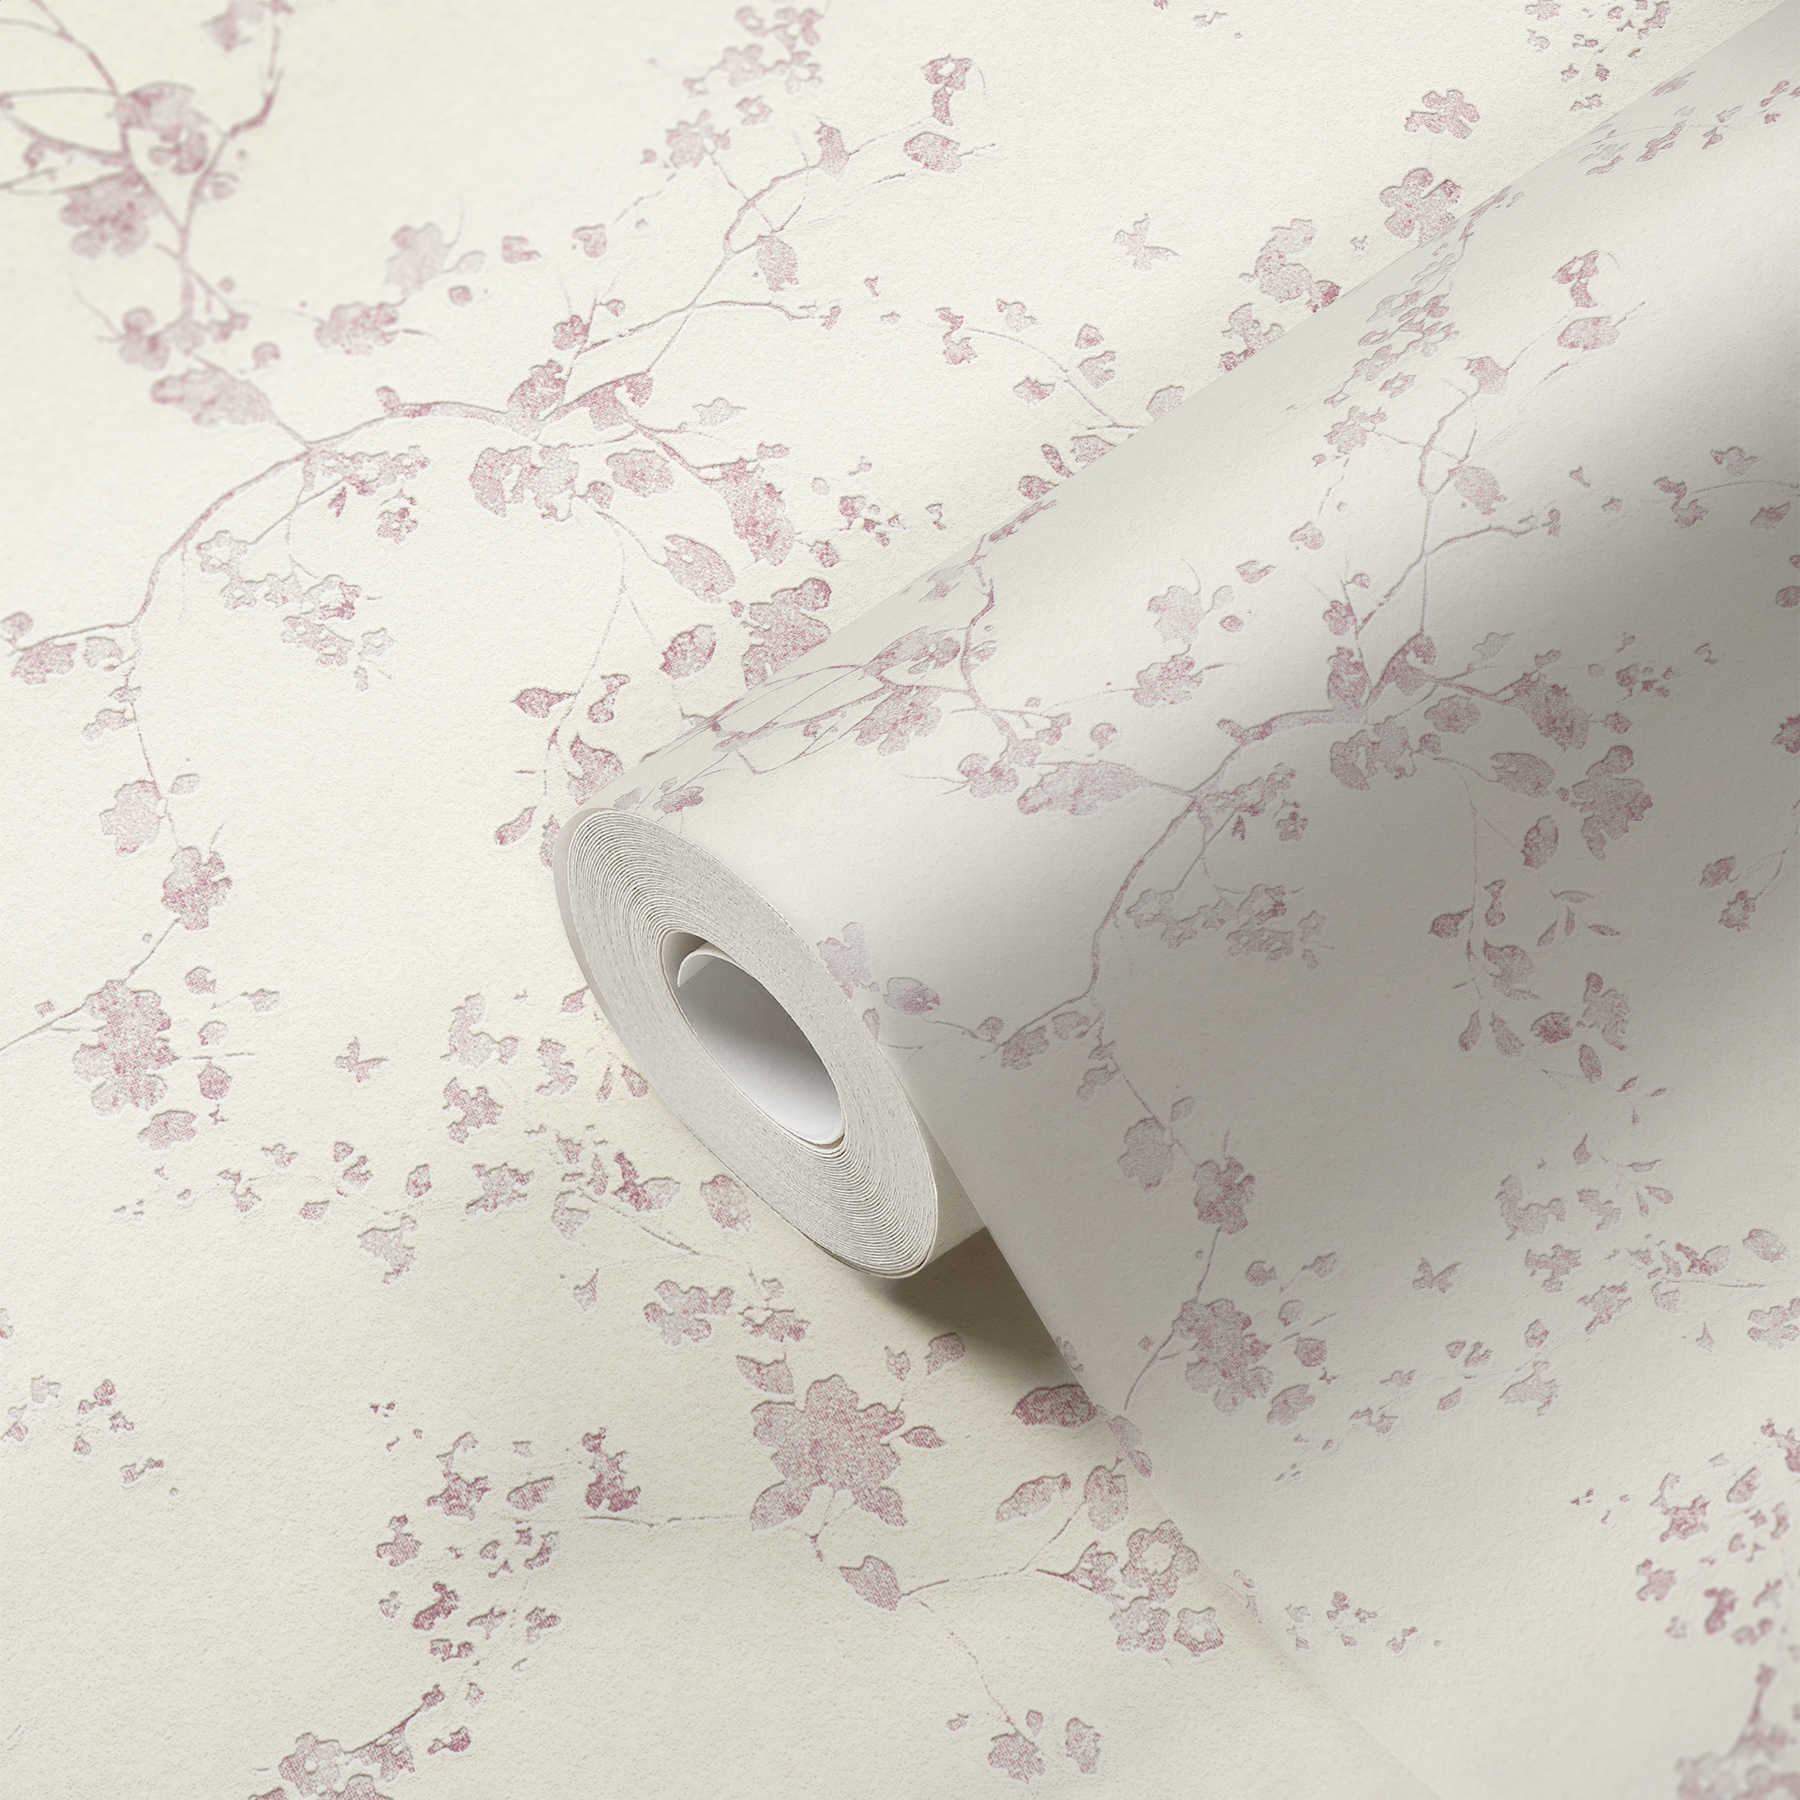             Papel pintado no tejido de flores en estilo rústico - violeta, crema
        